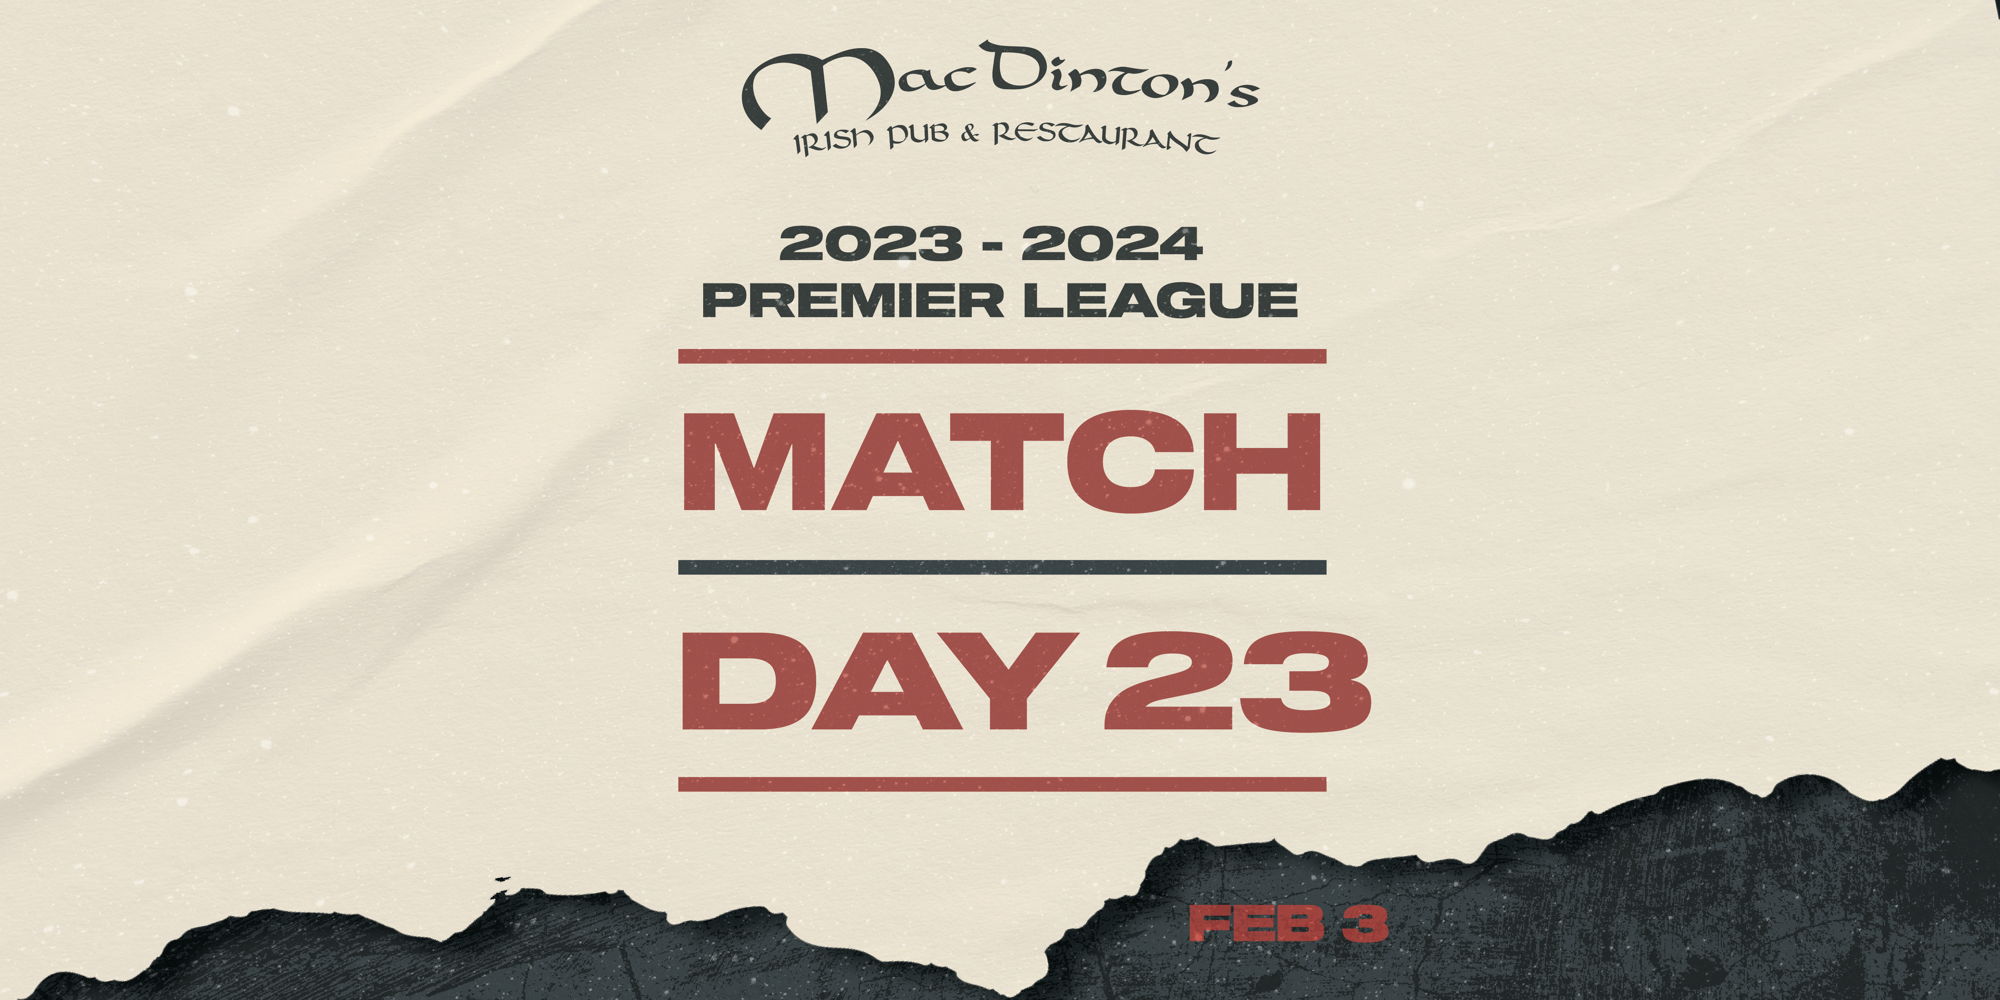 Premier League Match Day 23 promotional image